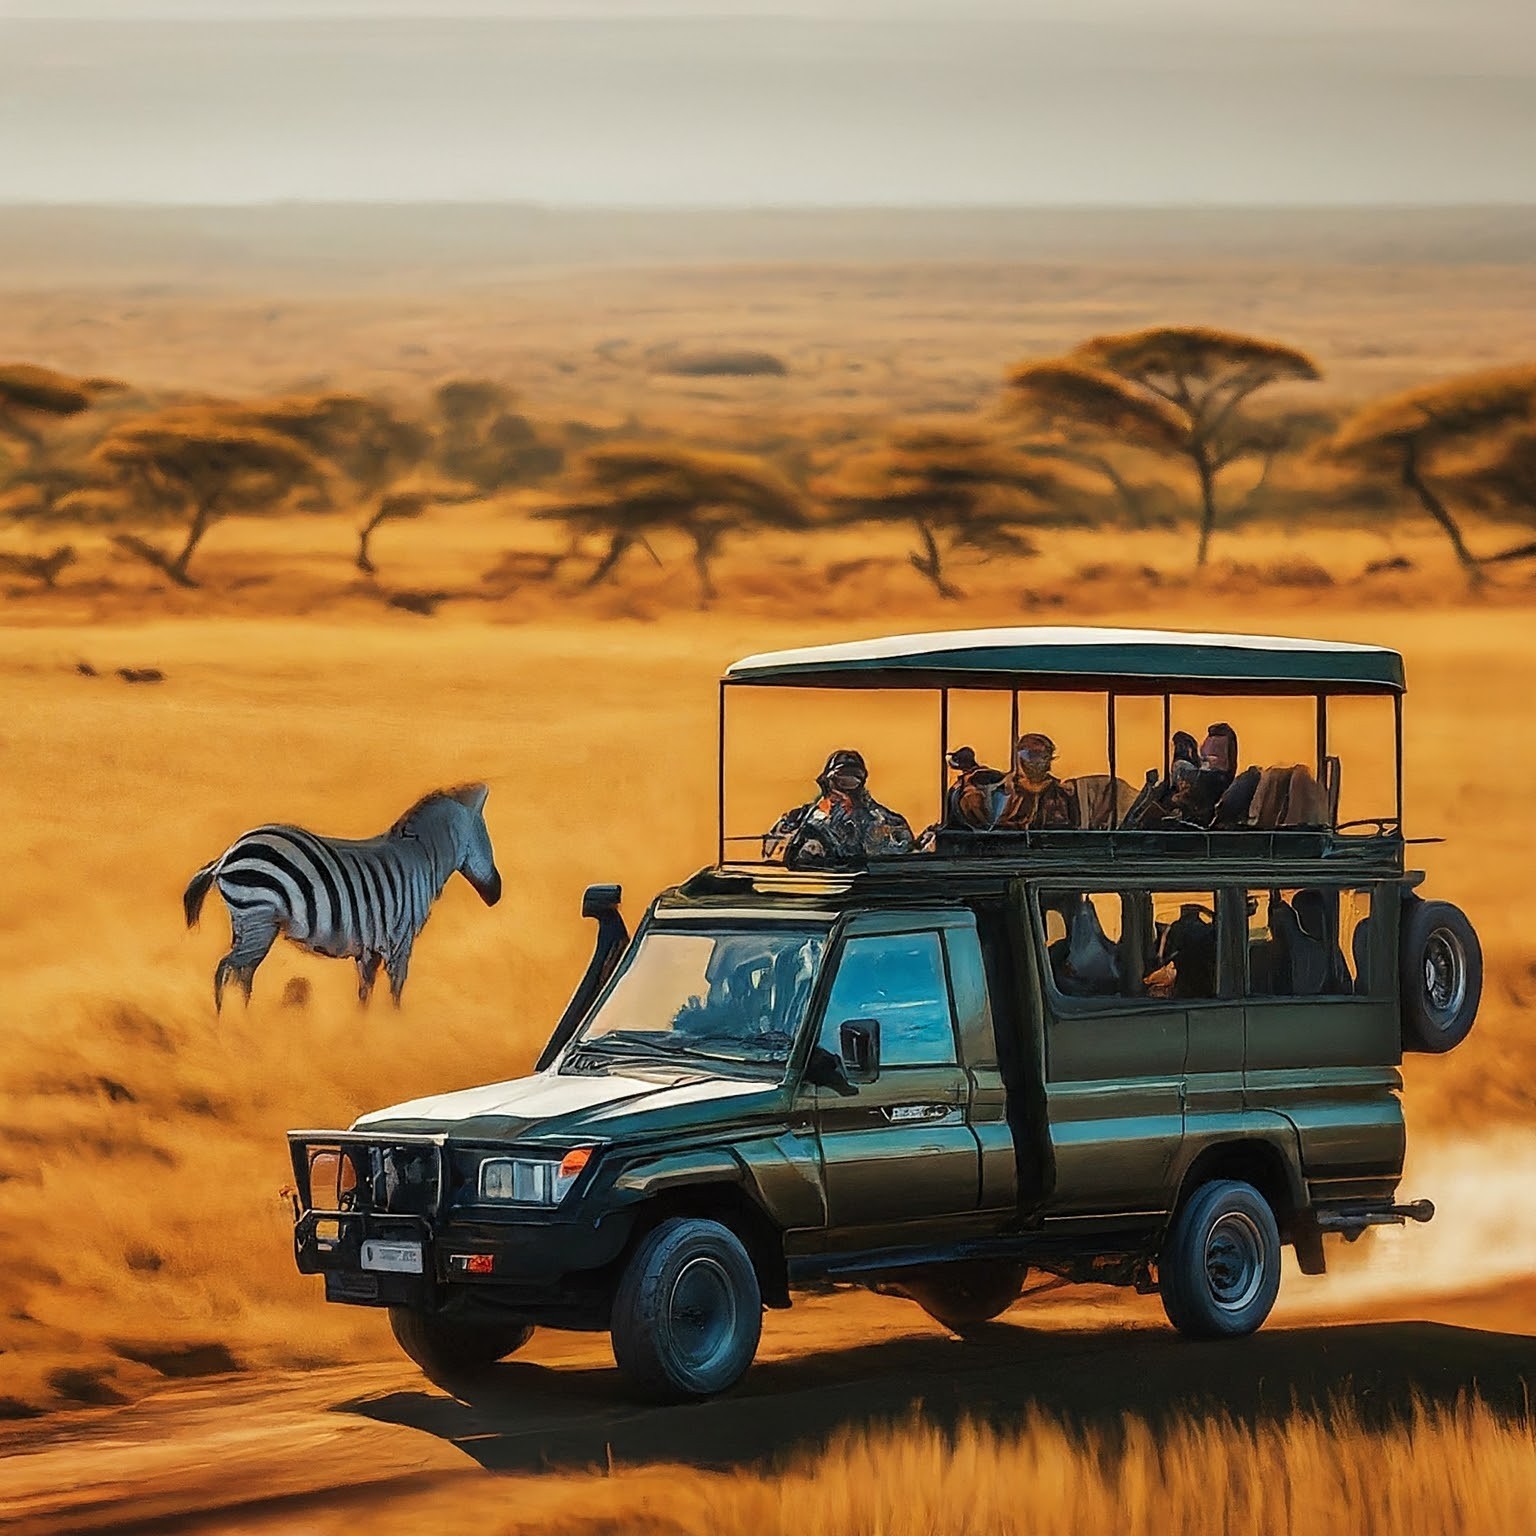 Capture the Magic: A Photographic Safari in Tanzania